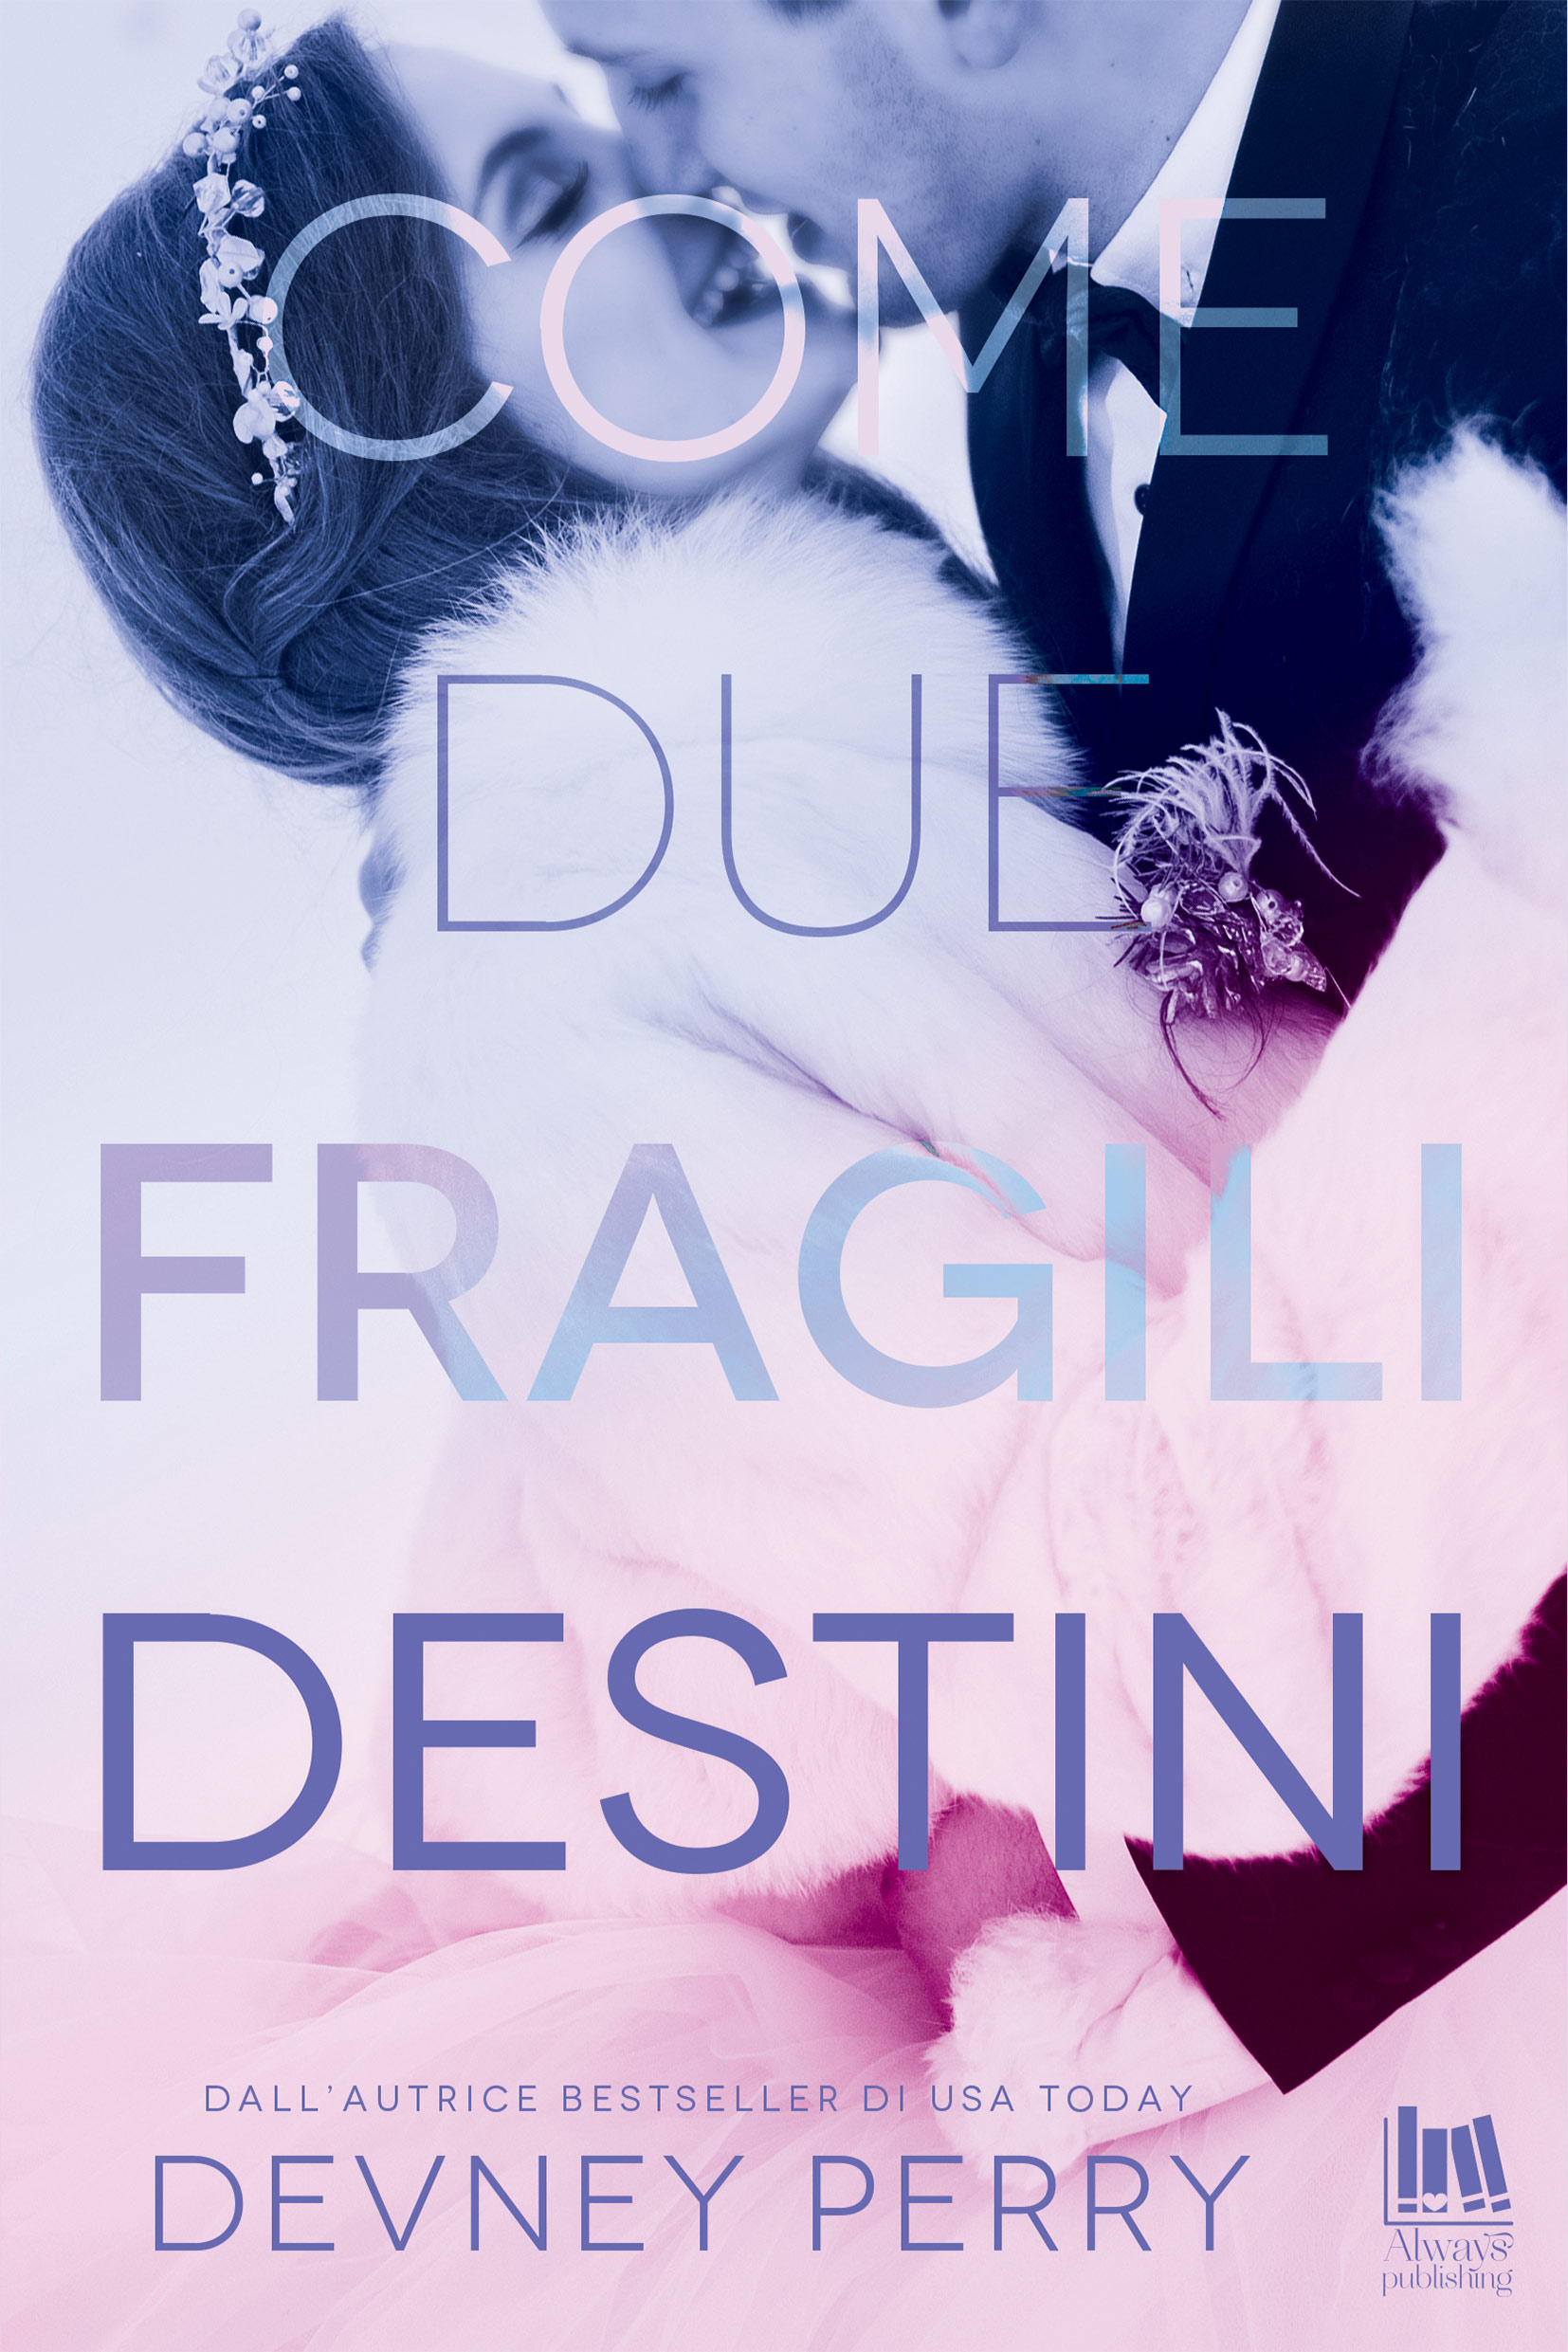 Cover of Come due fragili destini